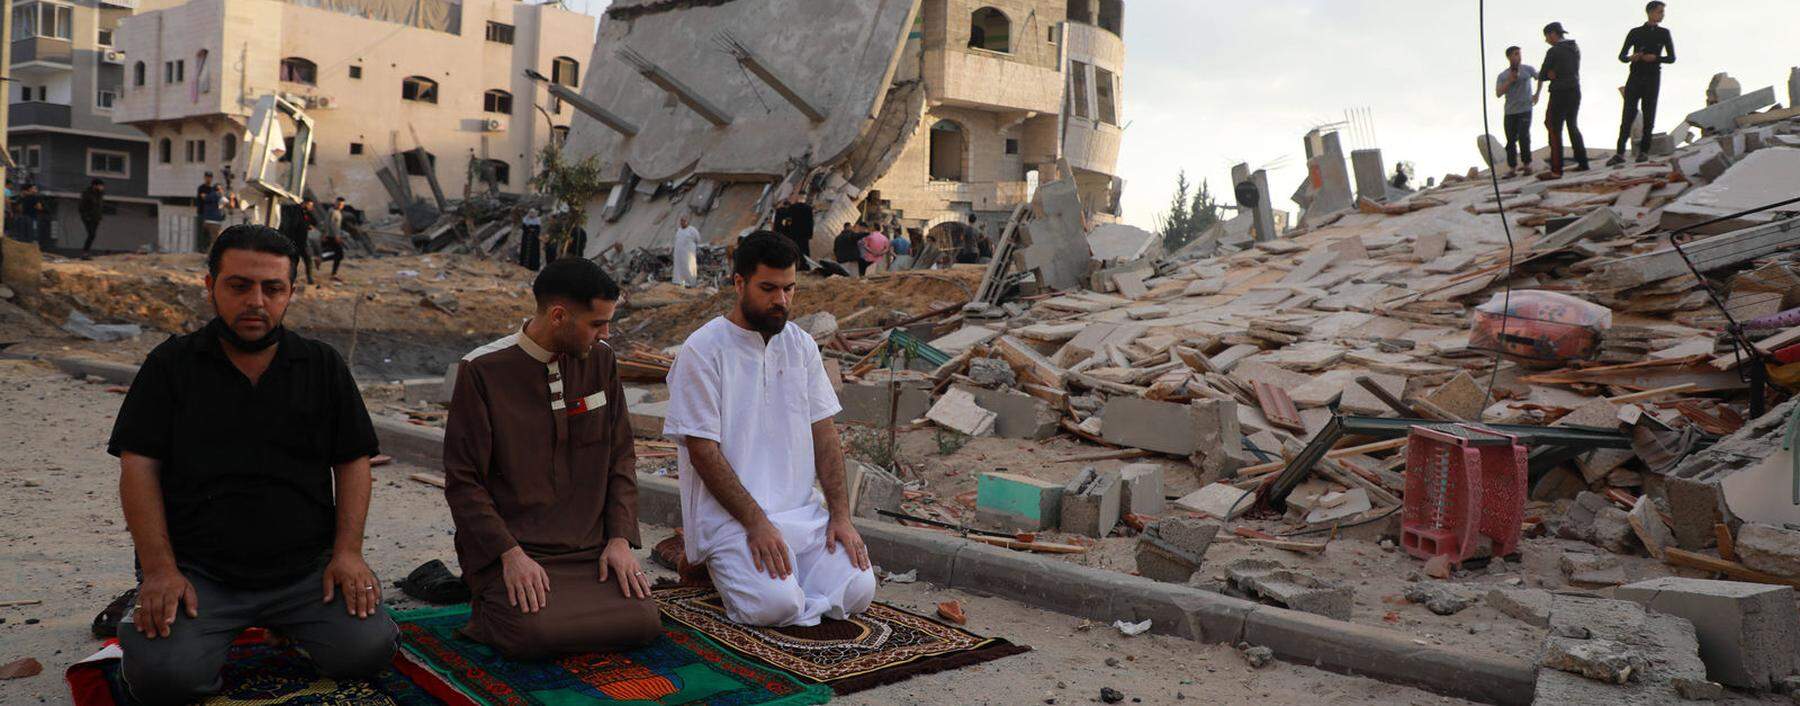 Im Gaza-Streifen begehen gläubige Muslime das Ende des Fastenmonats Ramadan in einem Trümmerhaufen. 